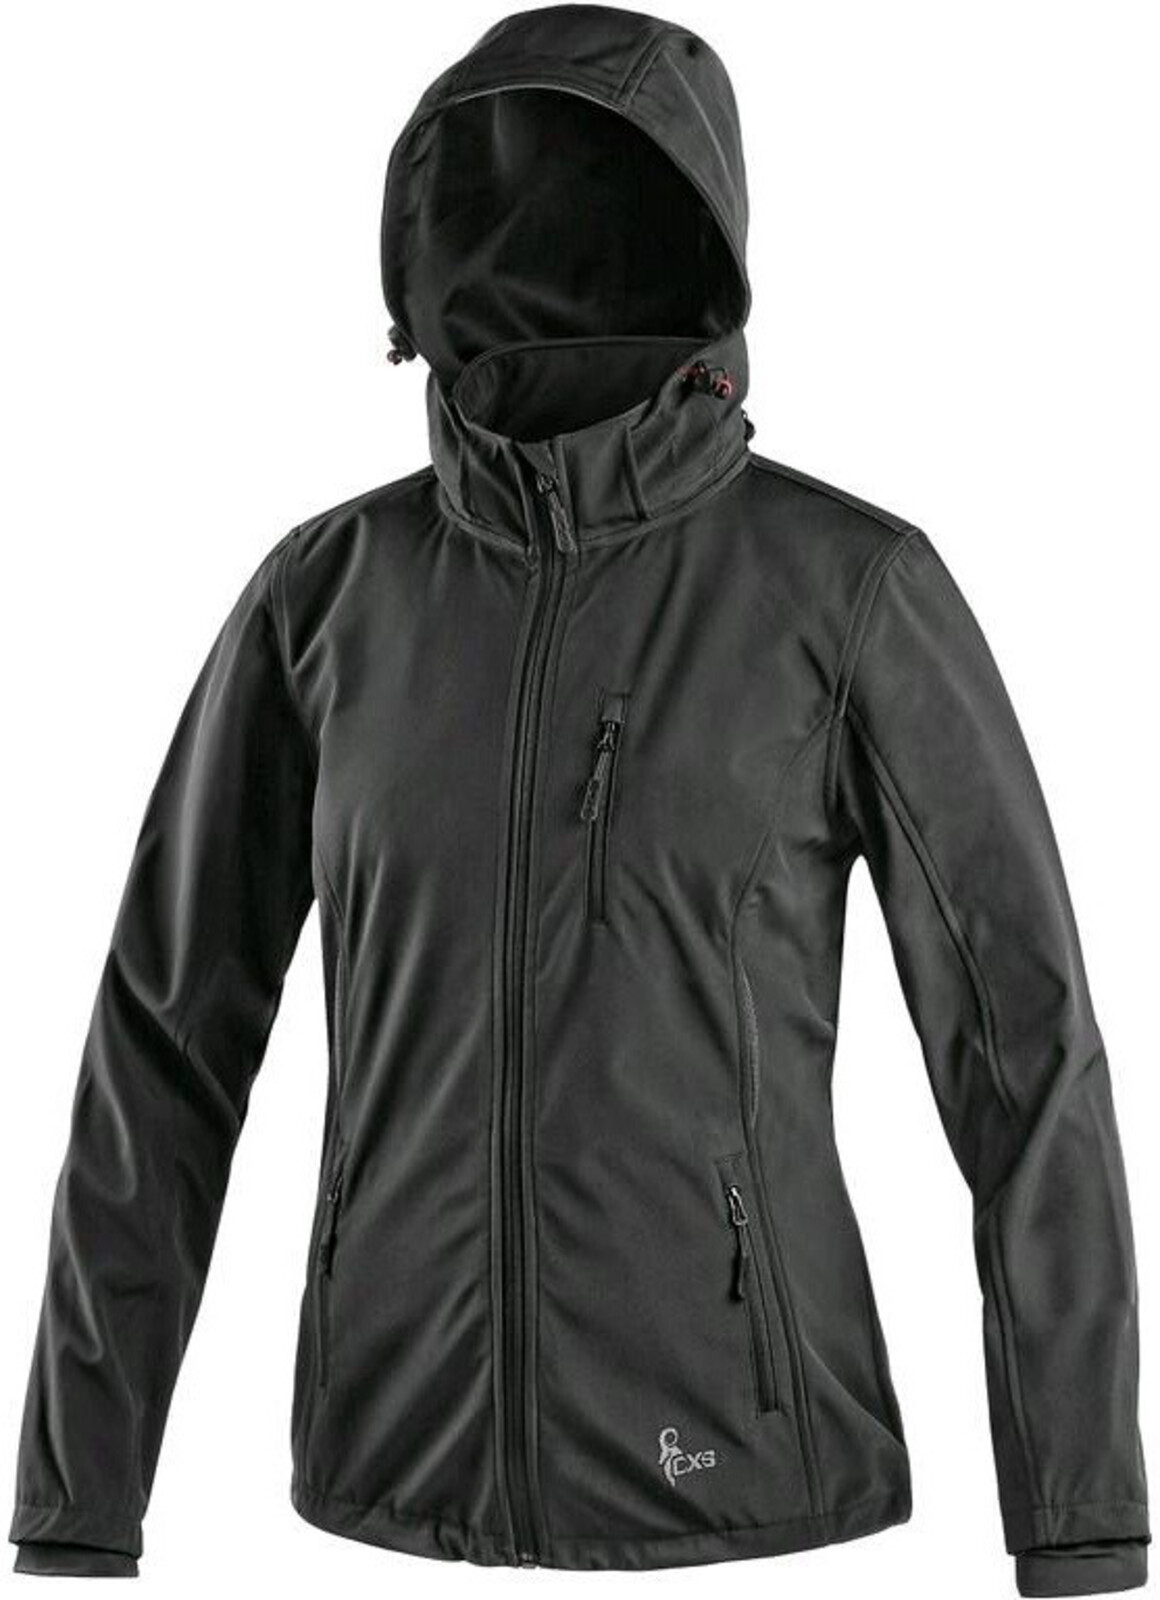 Dámska softshellová bunda CXS Digby - veľkosť: XXL, farba: čierna